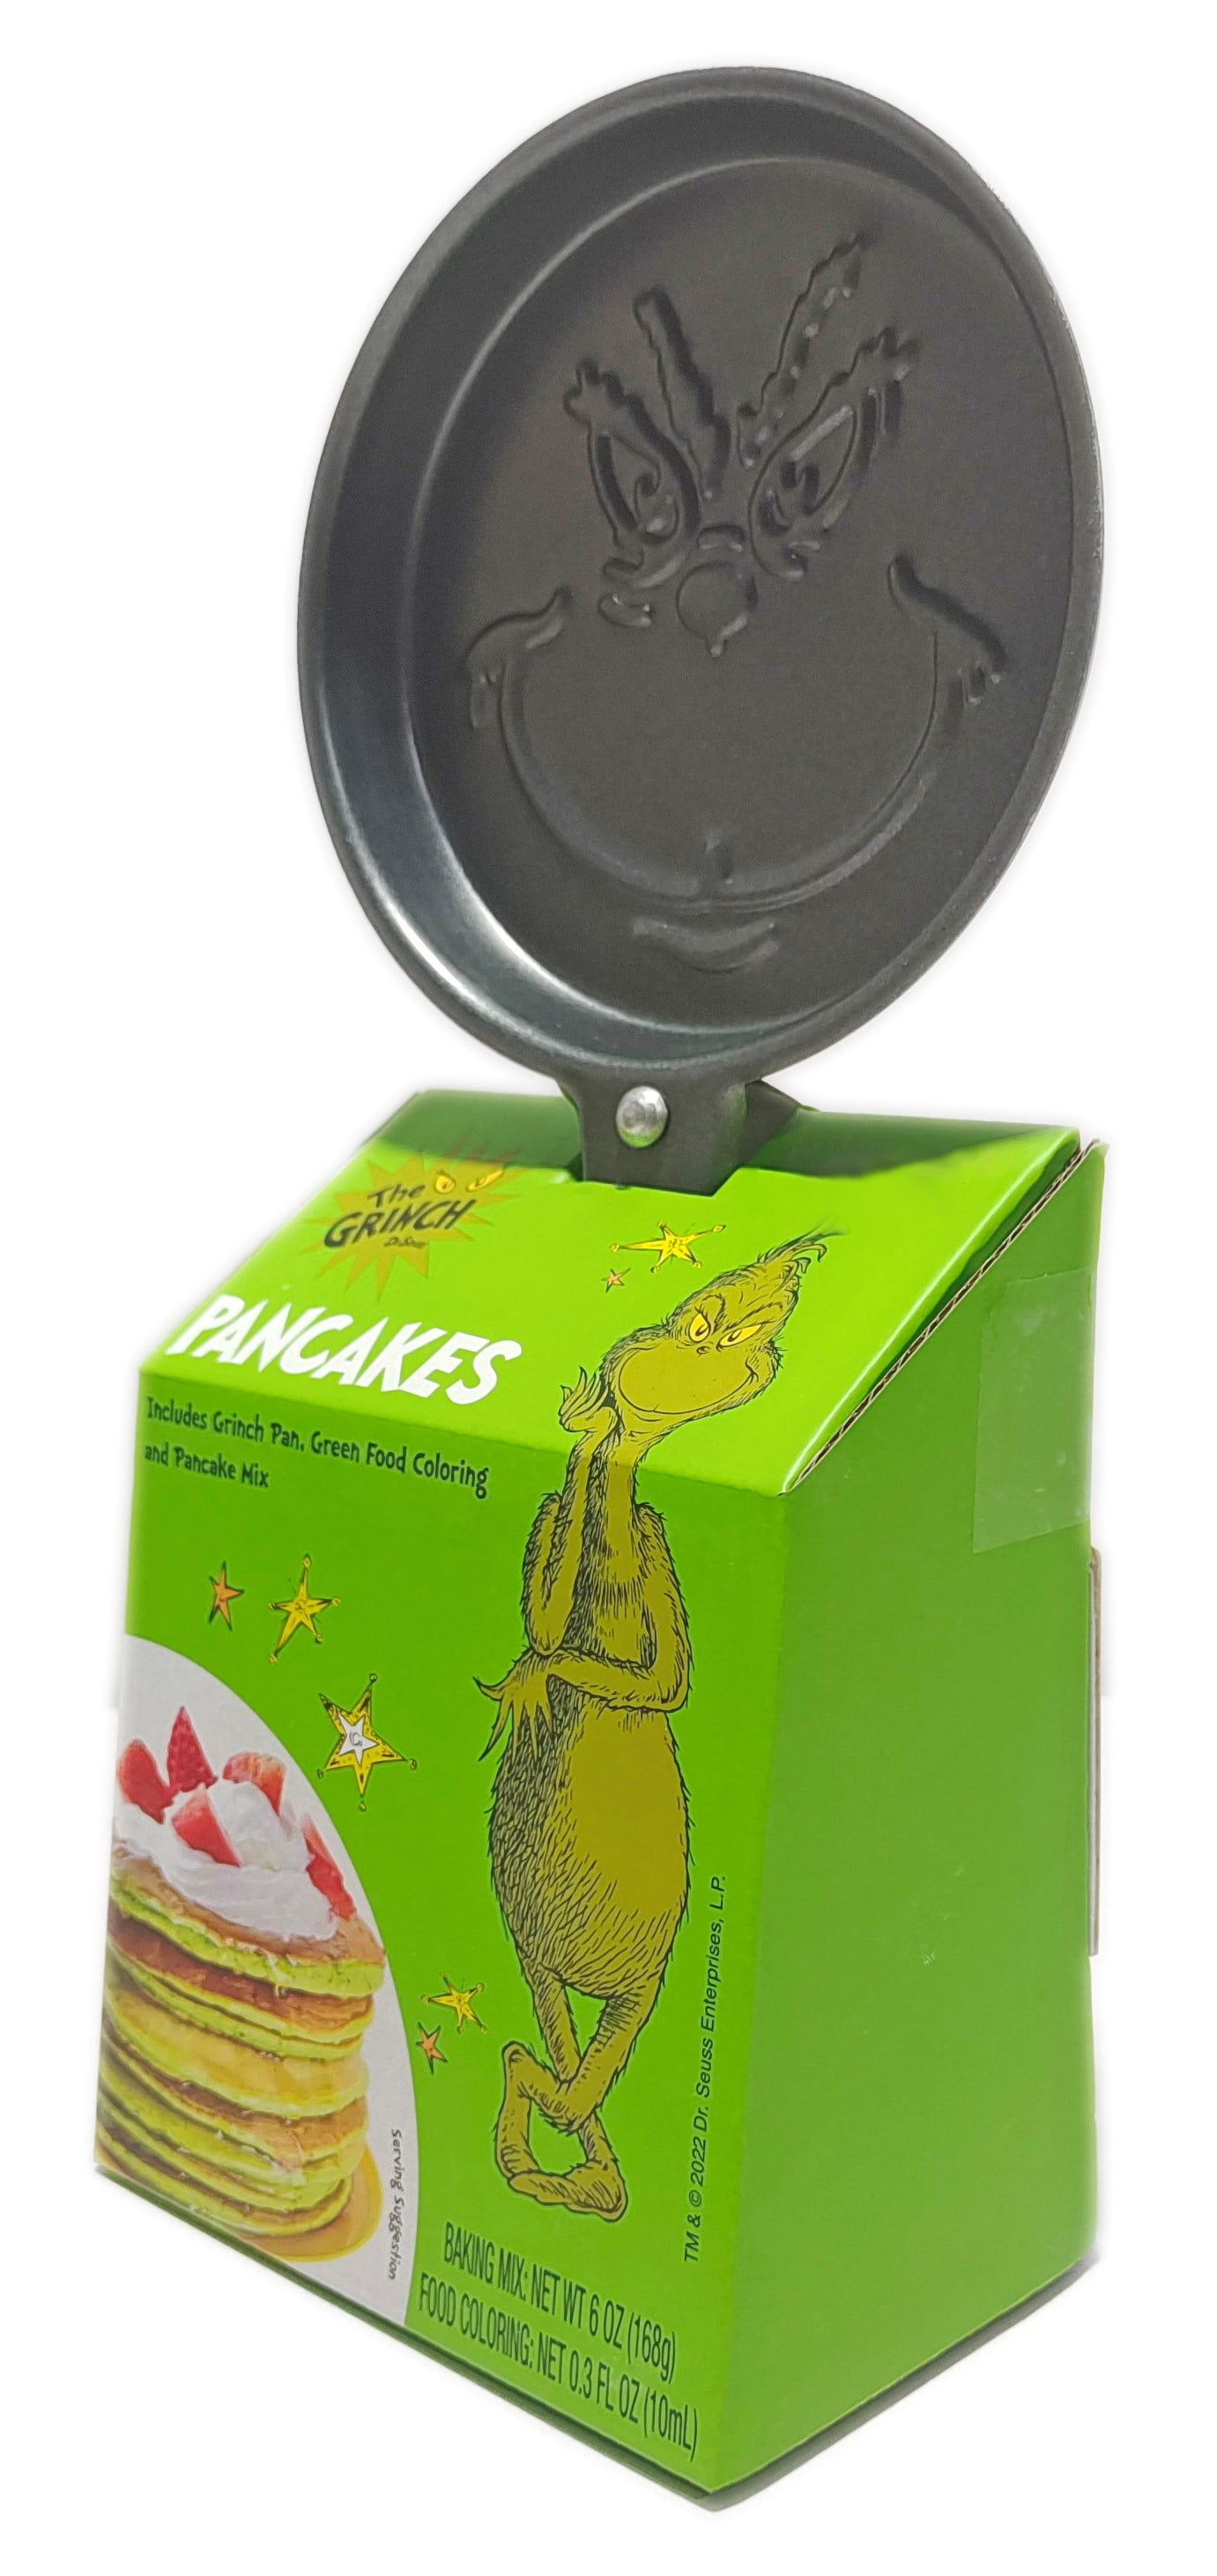 Grinch Pancake Skillet - Cracker Barrel